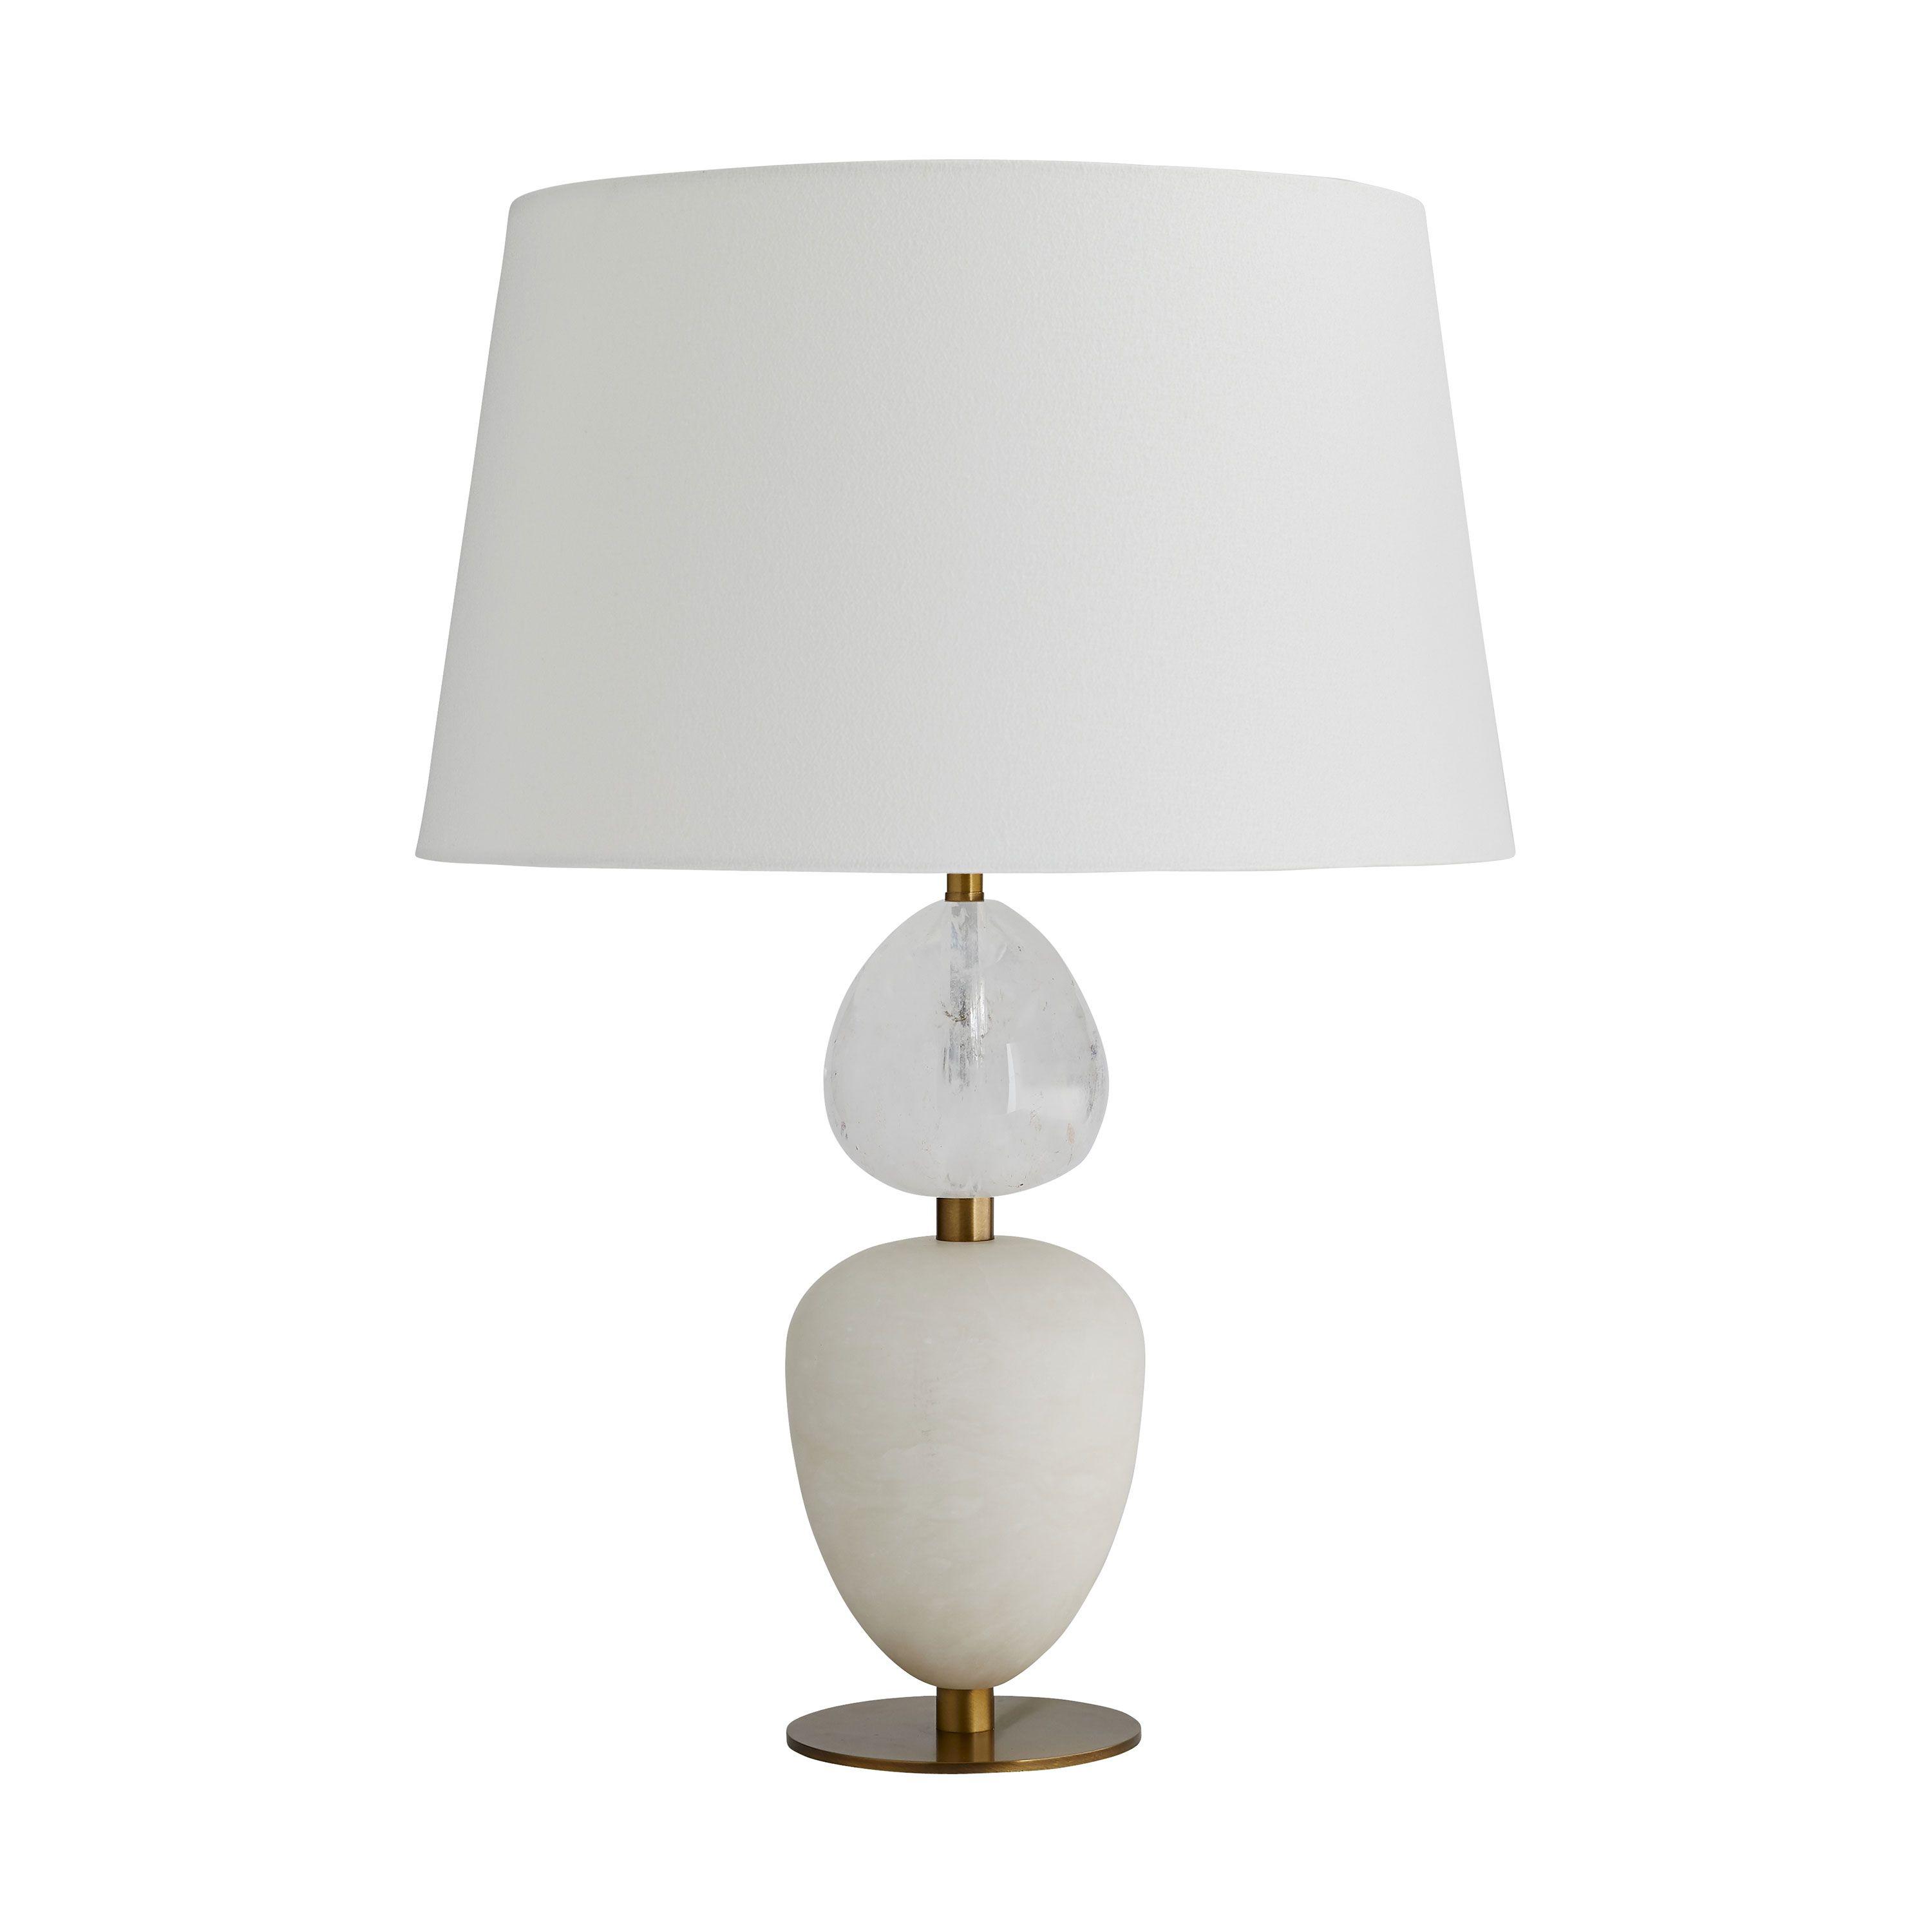 Купить Настольная лампа Aubrey Lamp в интернет-магазине roooms.ru